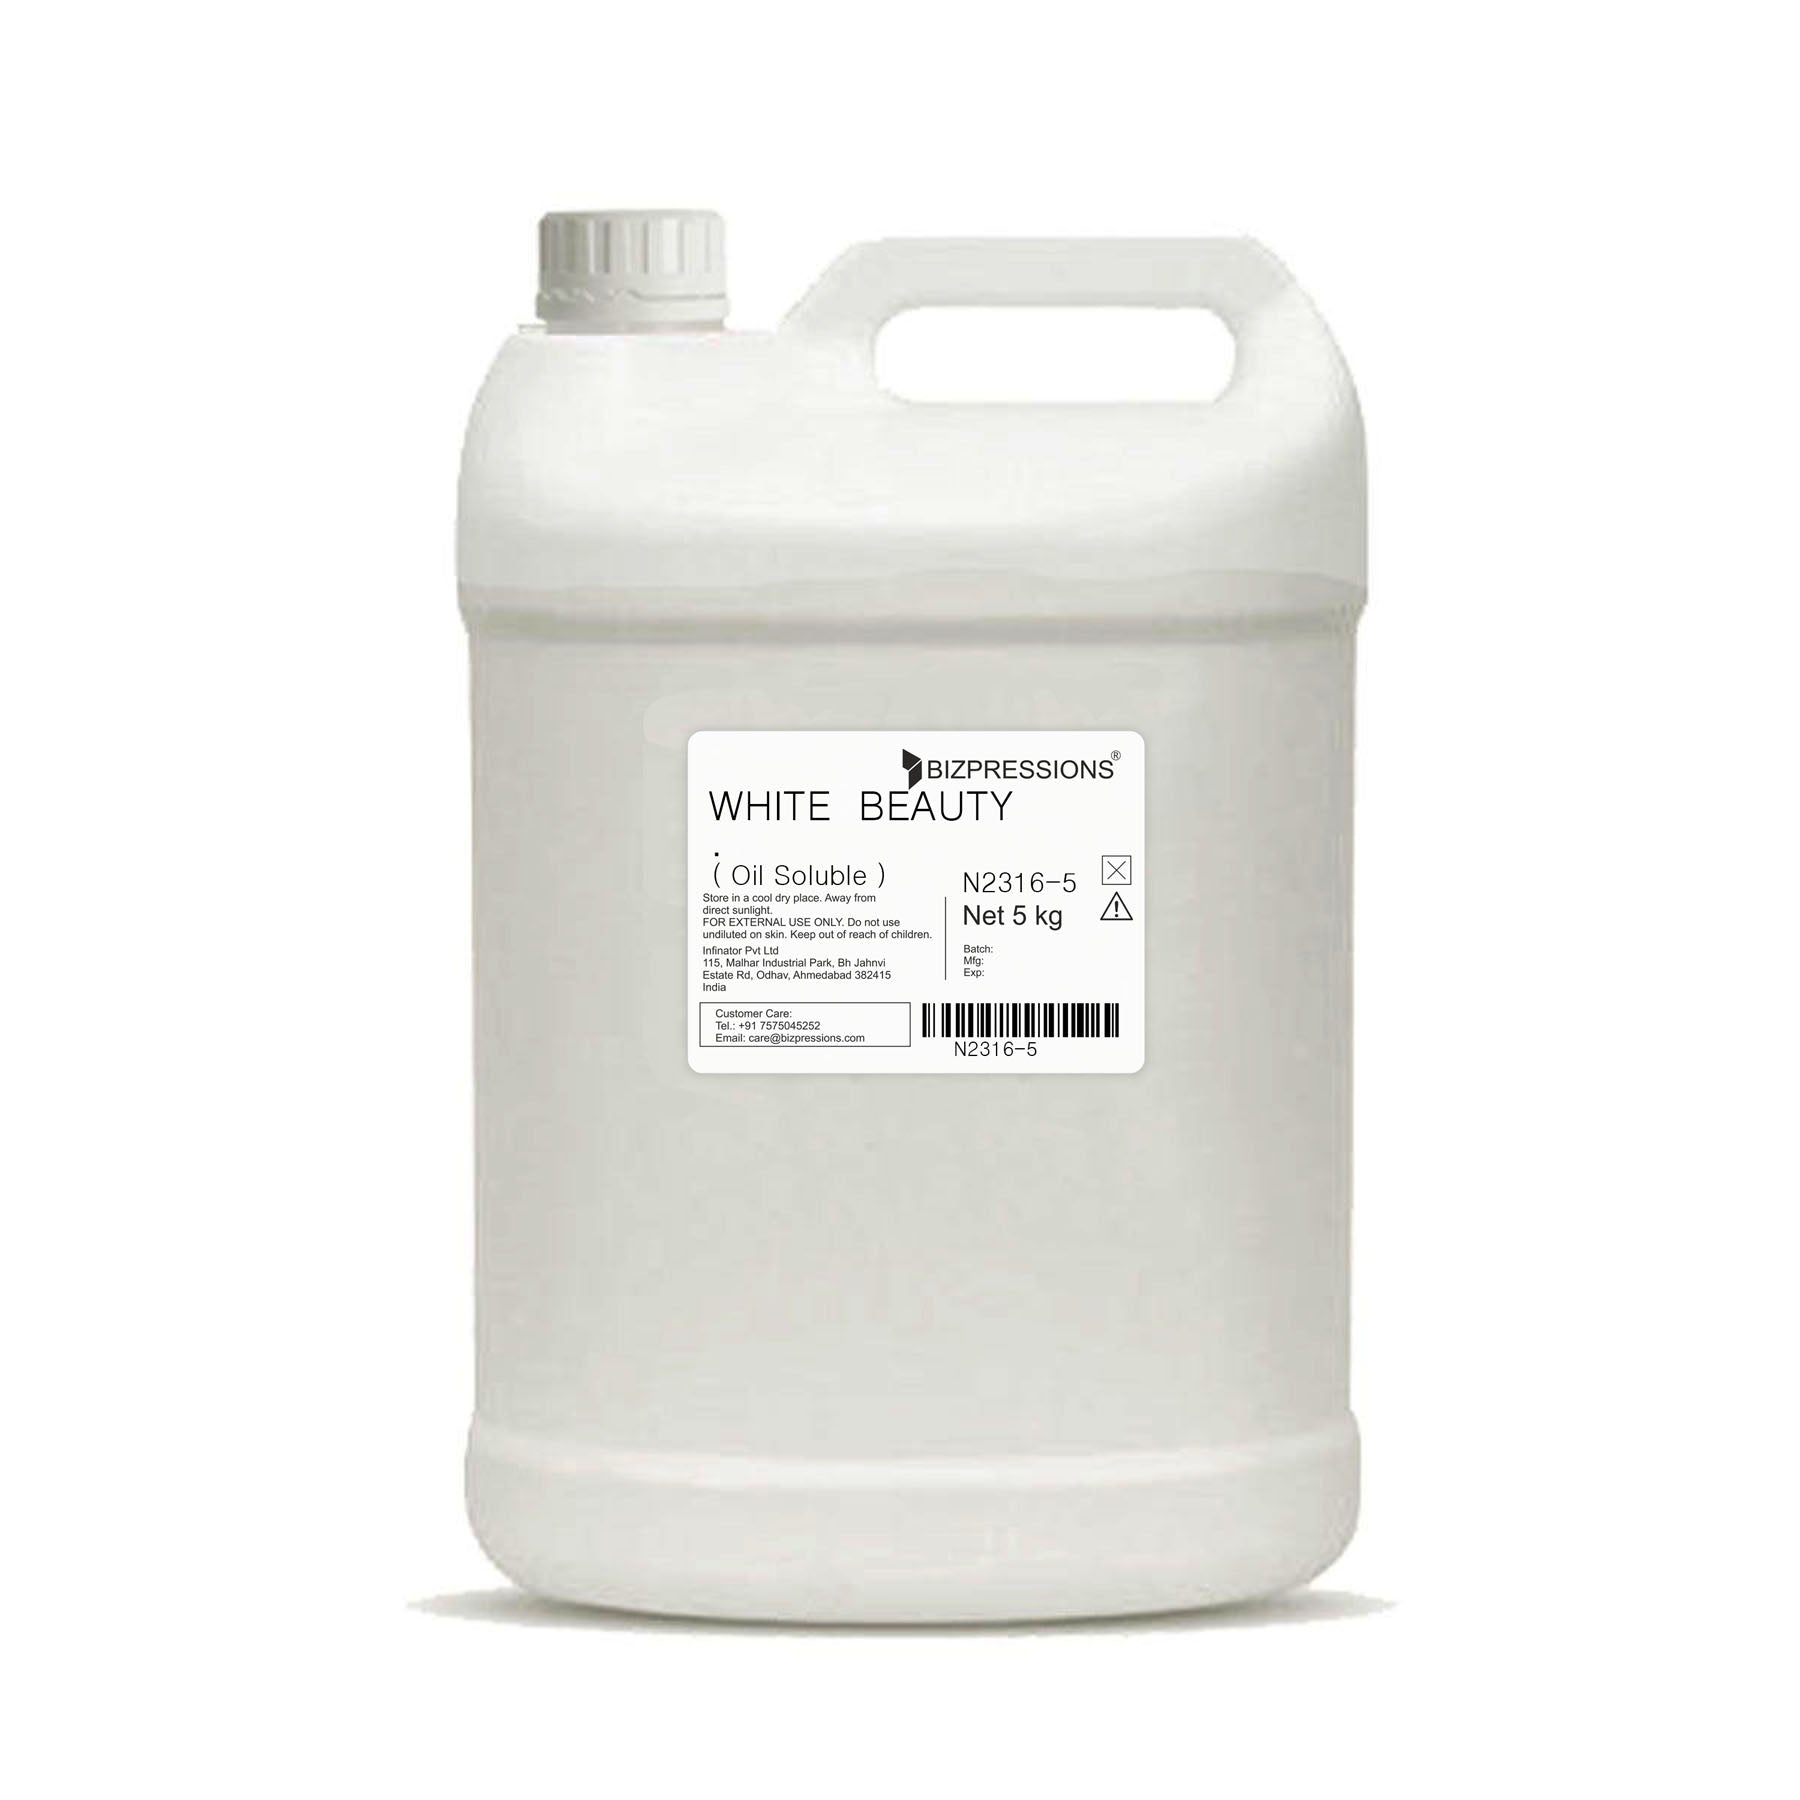 WHITE BEAUTY - Fragrance ( Oil Soluble ) - 5 kg